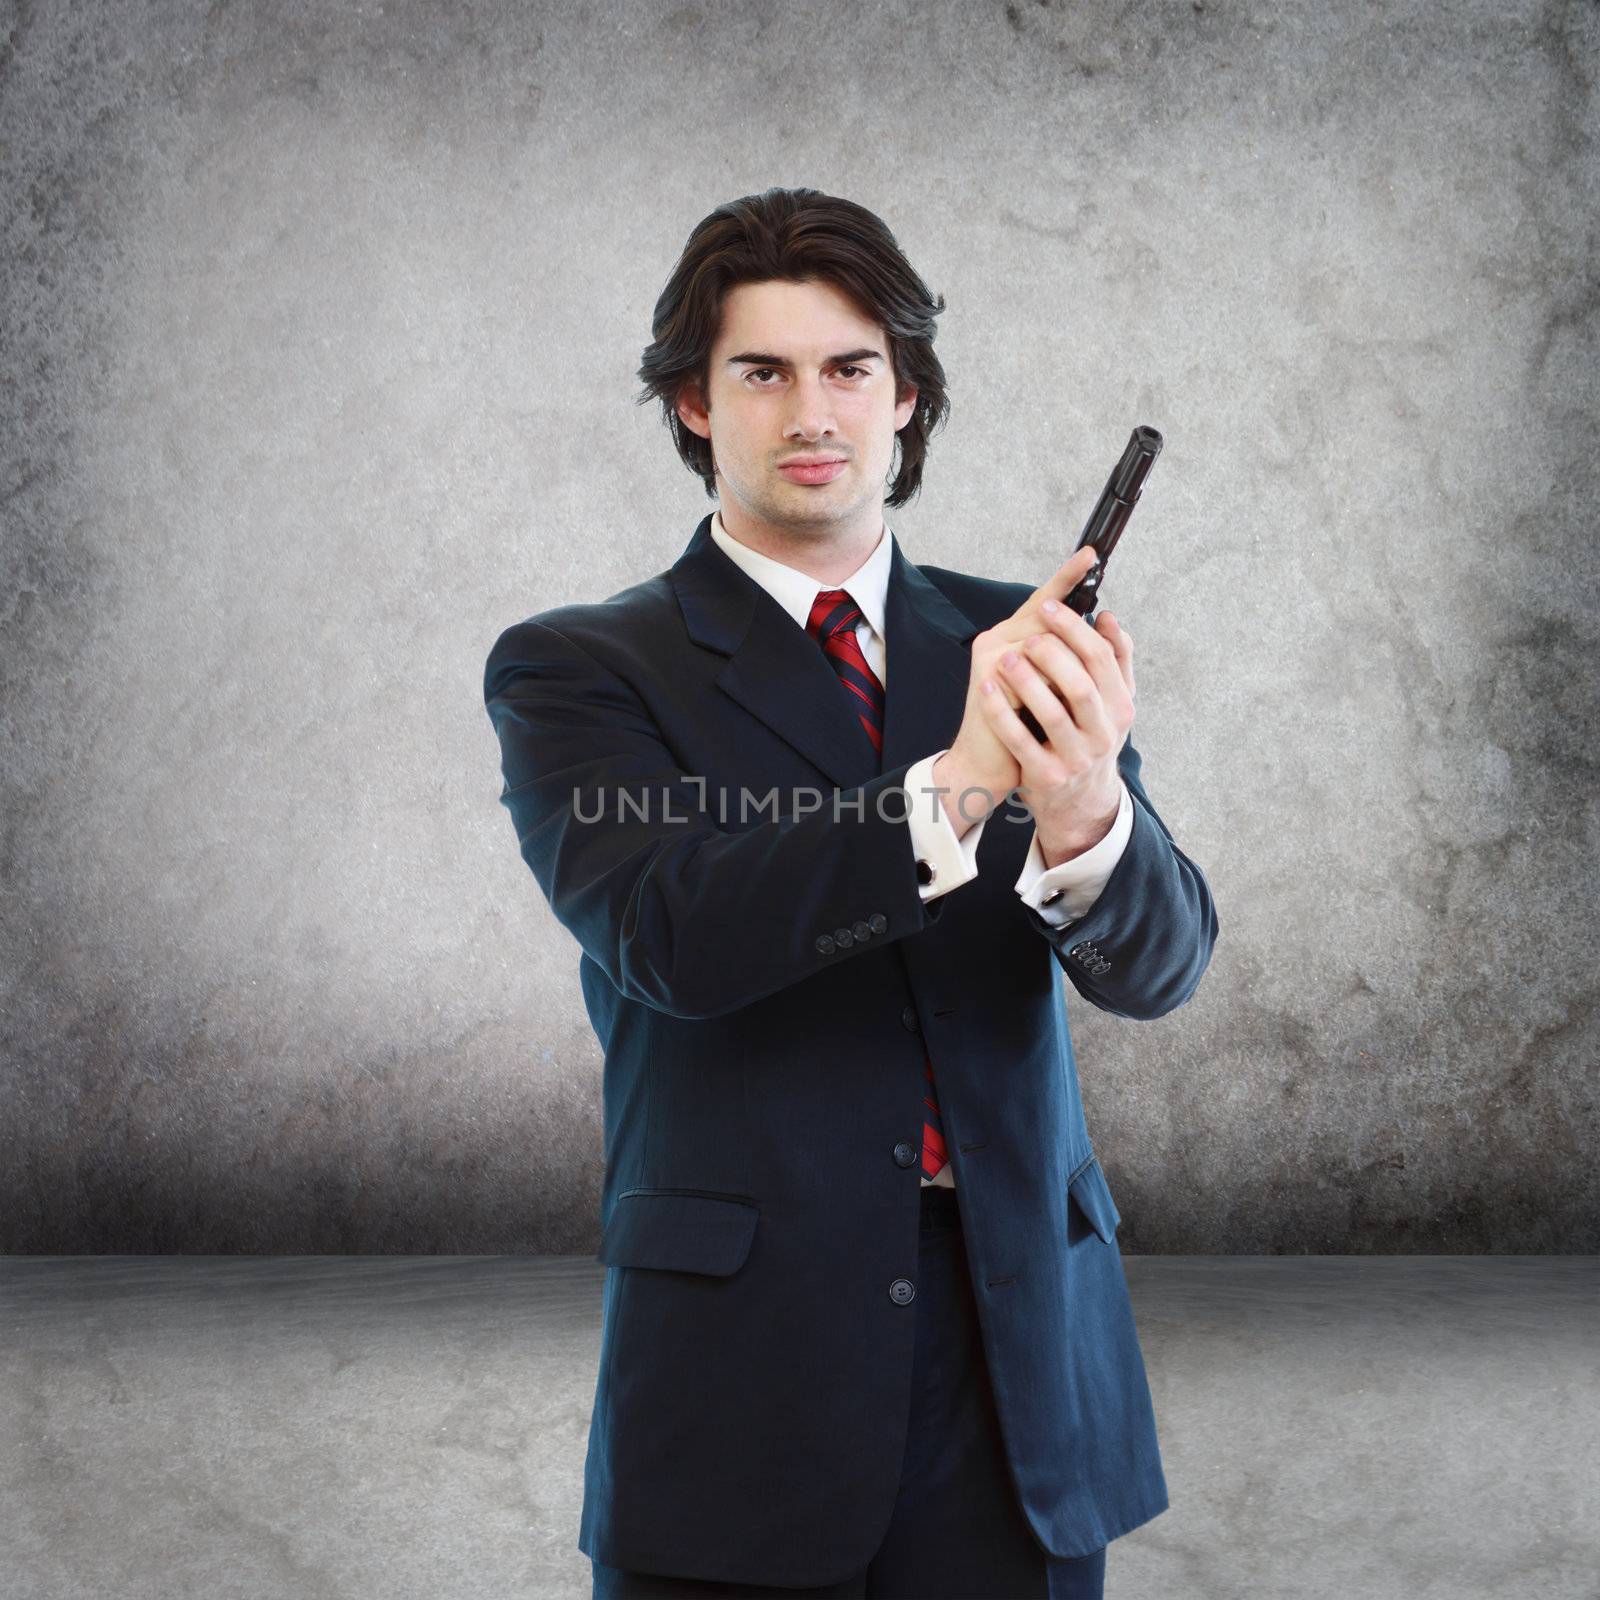 Handsome Man with a Hand Gun  by melpomene